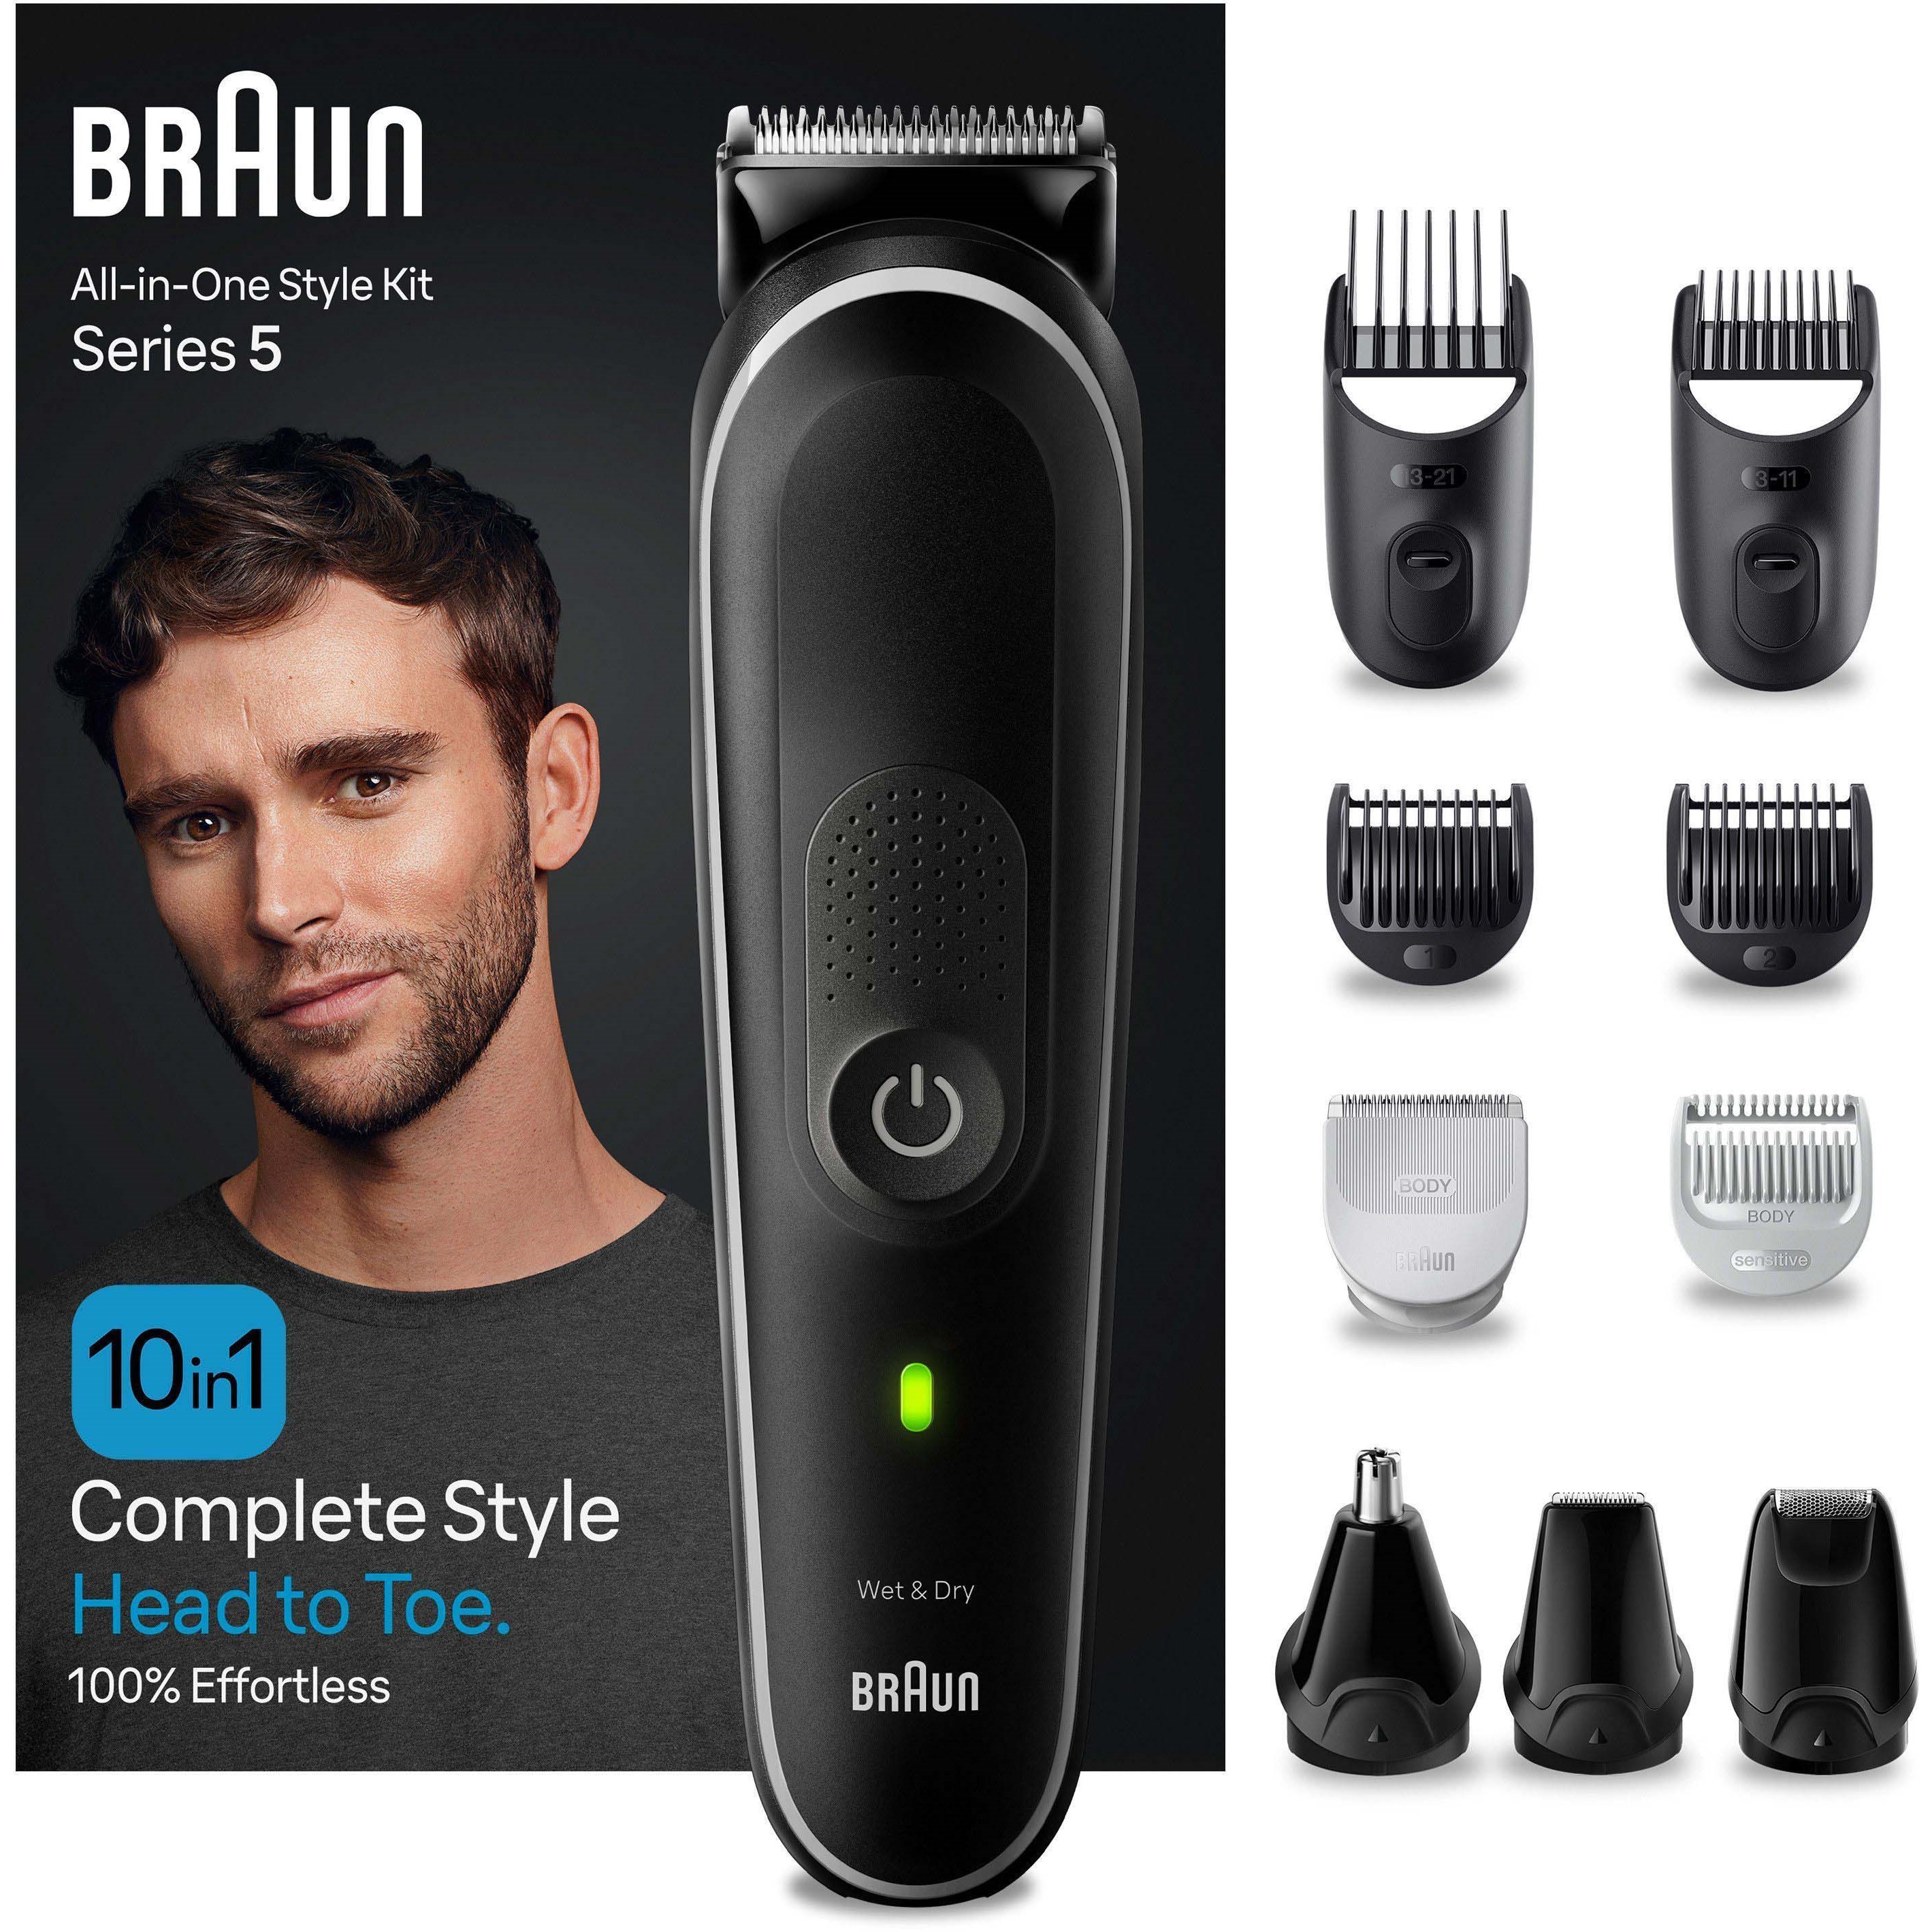 Bilde av Braun All-in-one Style Kit Series 5 Mgk5440 10-in-1 Kit For Men